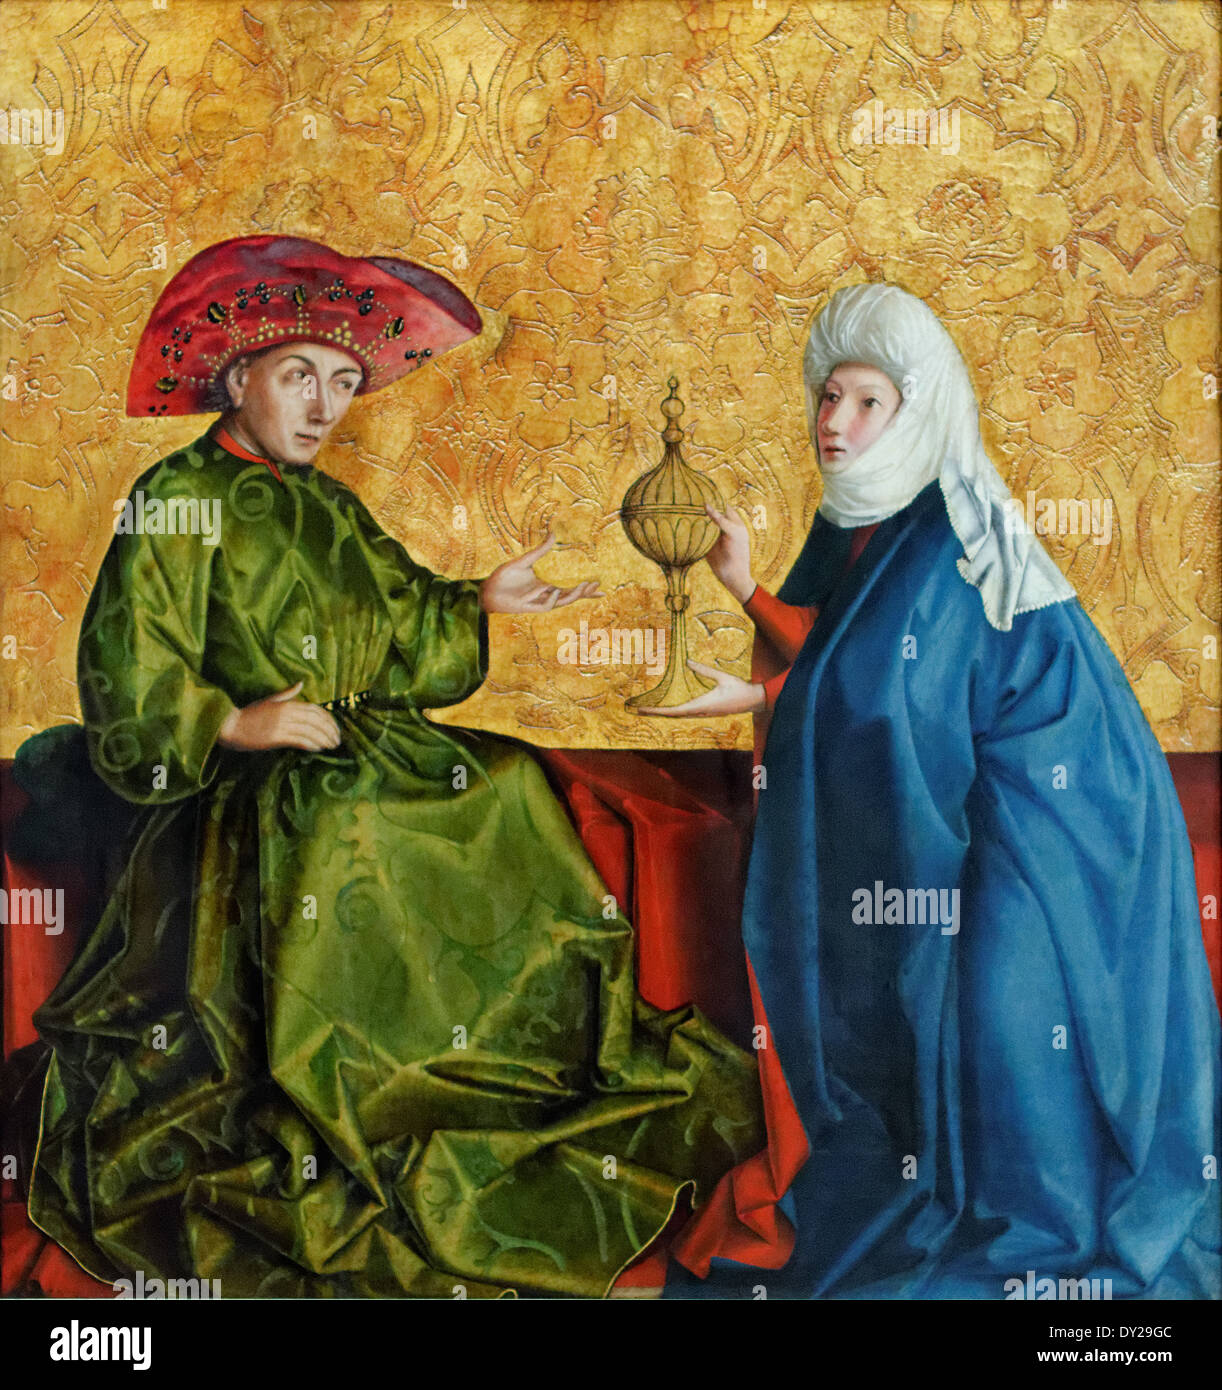 Konrad Witz - La reine de Saba et Salomon - 1437 - XV ème siècle - École allemande - Gemäldegalerie - Berlin Banque D'Images